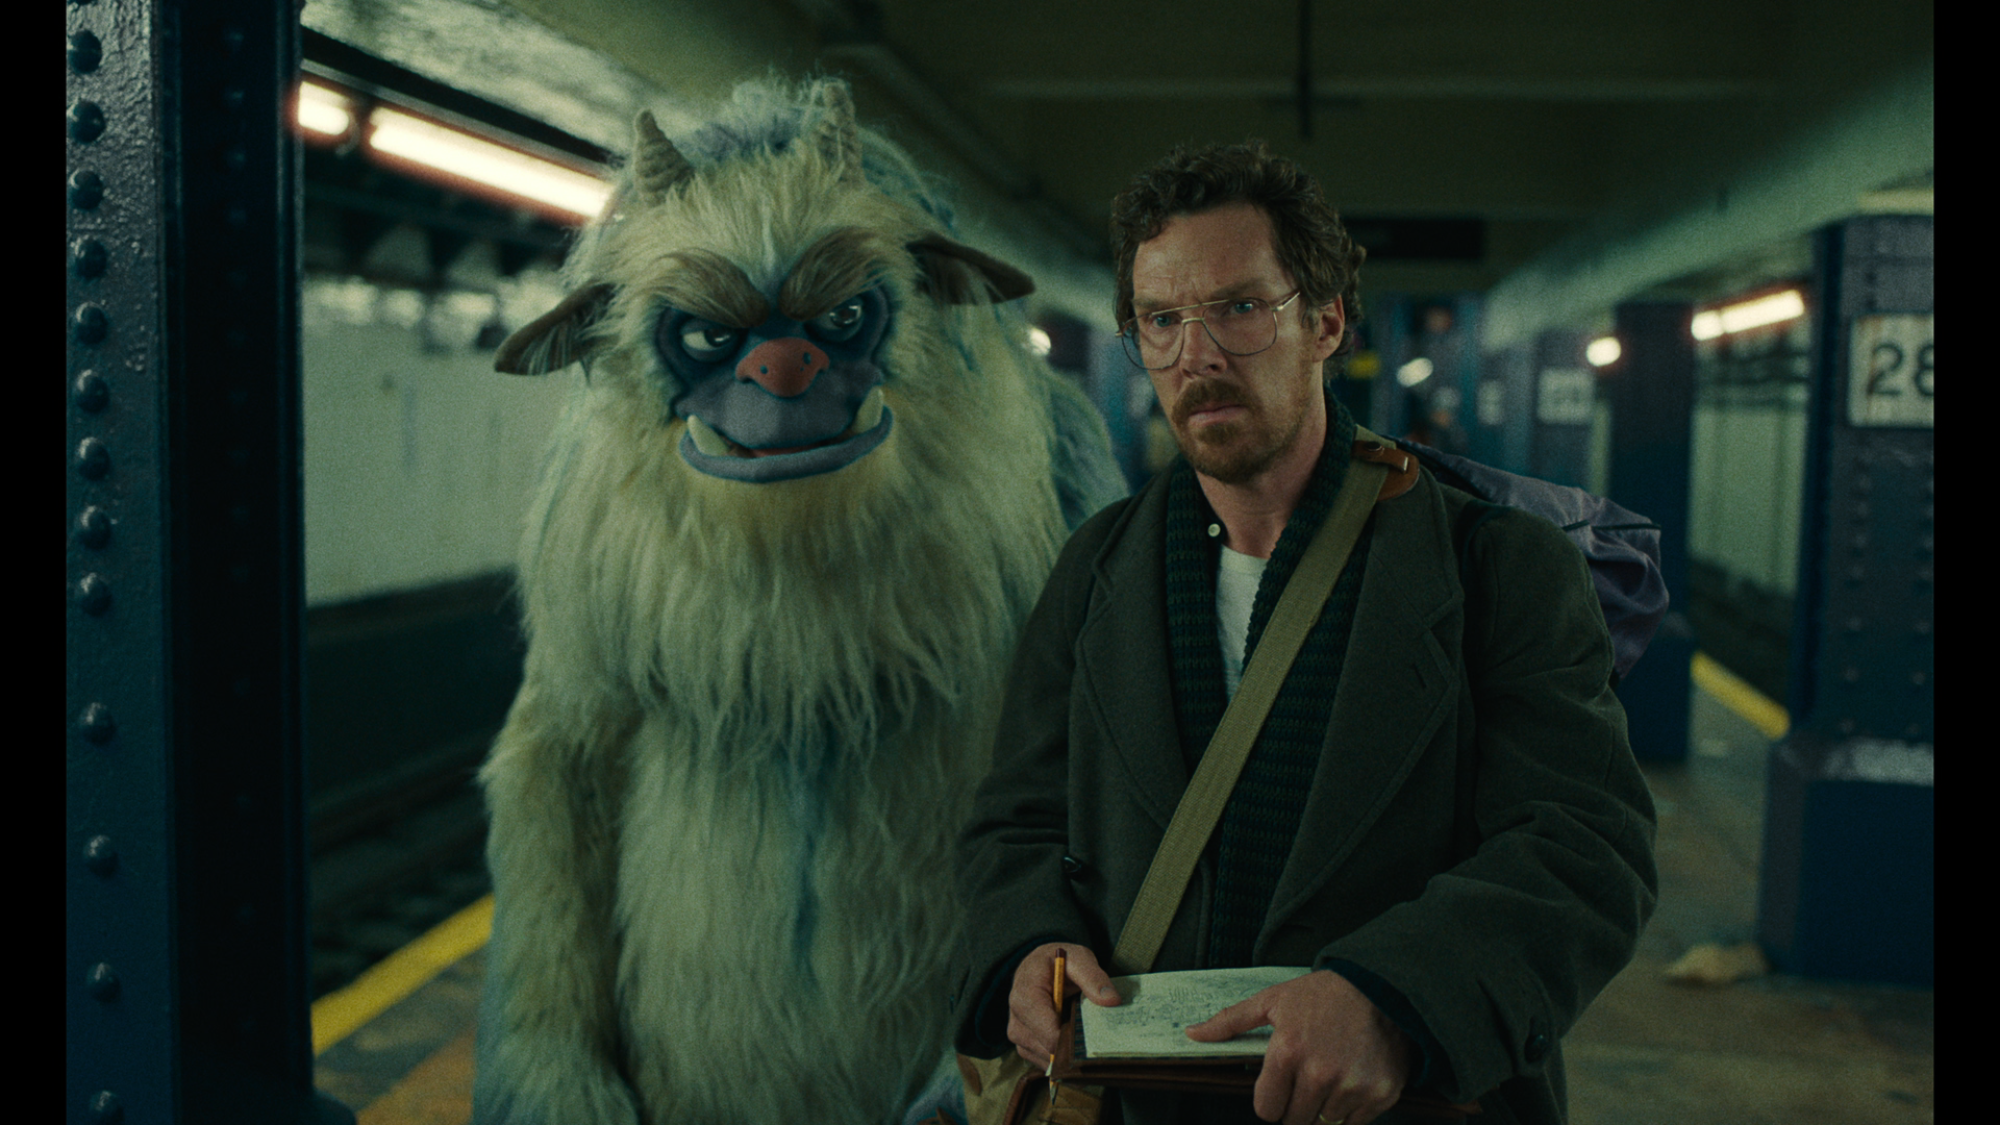 Um boneco monstro em tamanho real andando atrás de um homem em uma plataforma de metrô.